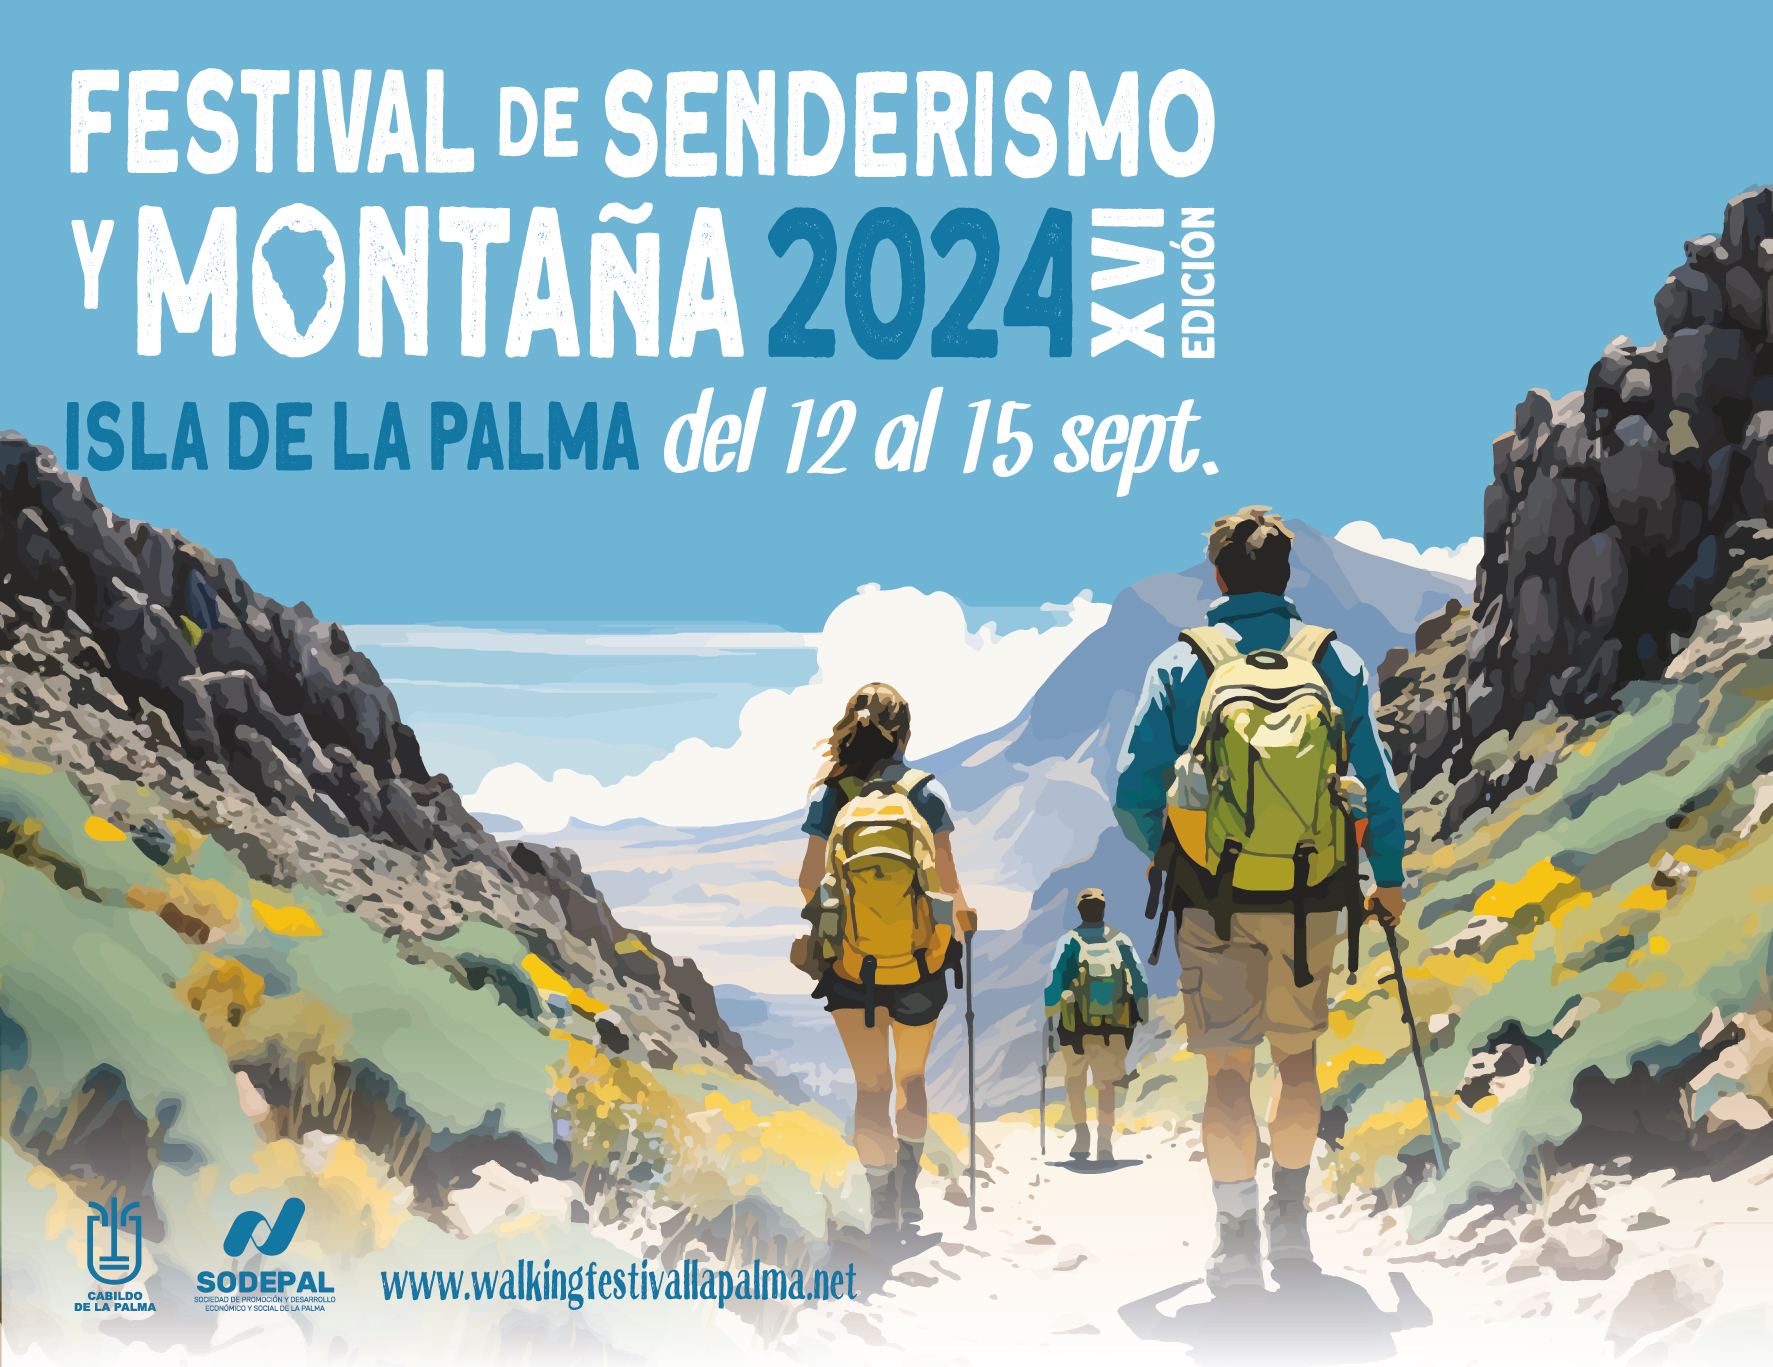 FESTIVAL DE SENDERISMO Y MONTAÑA DE LA PALMA 2024 - Register